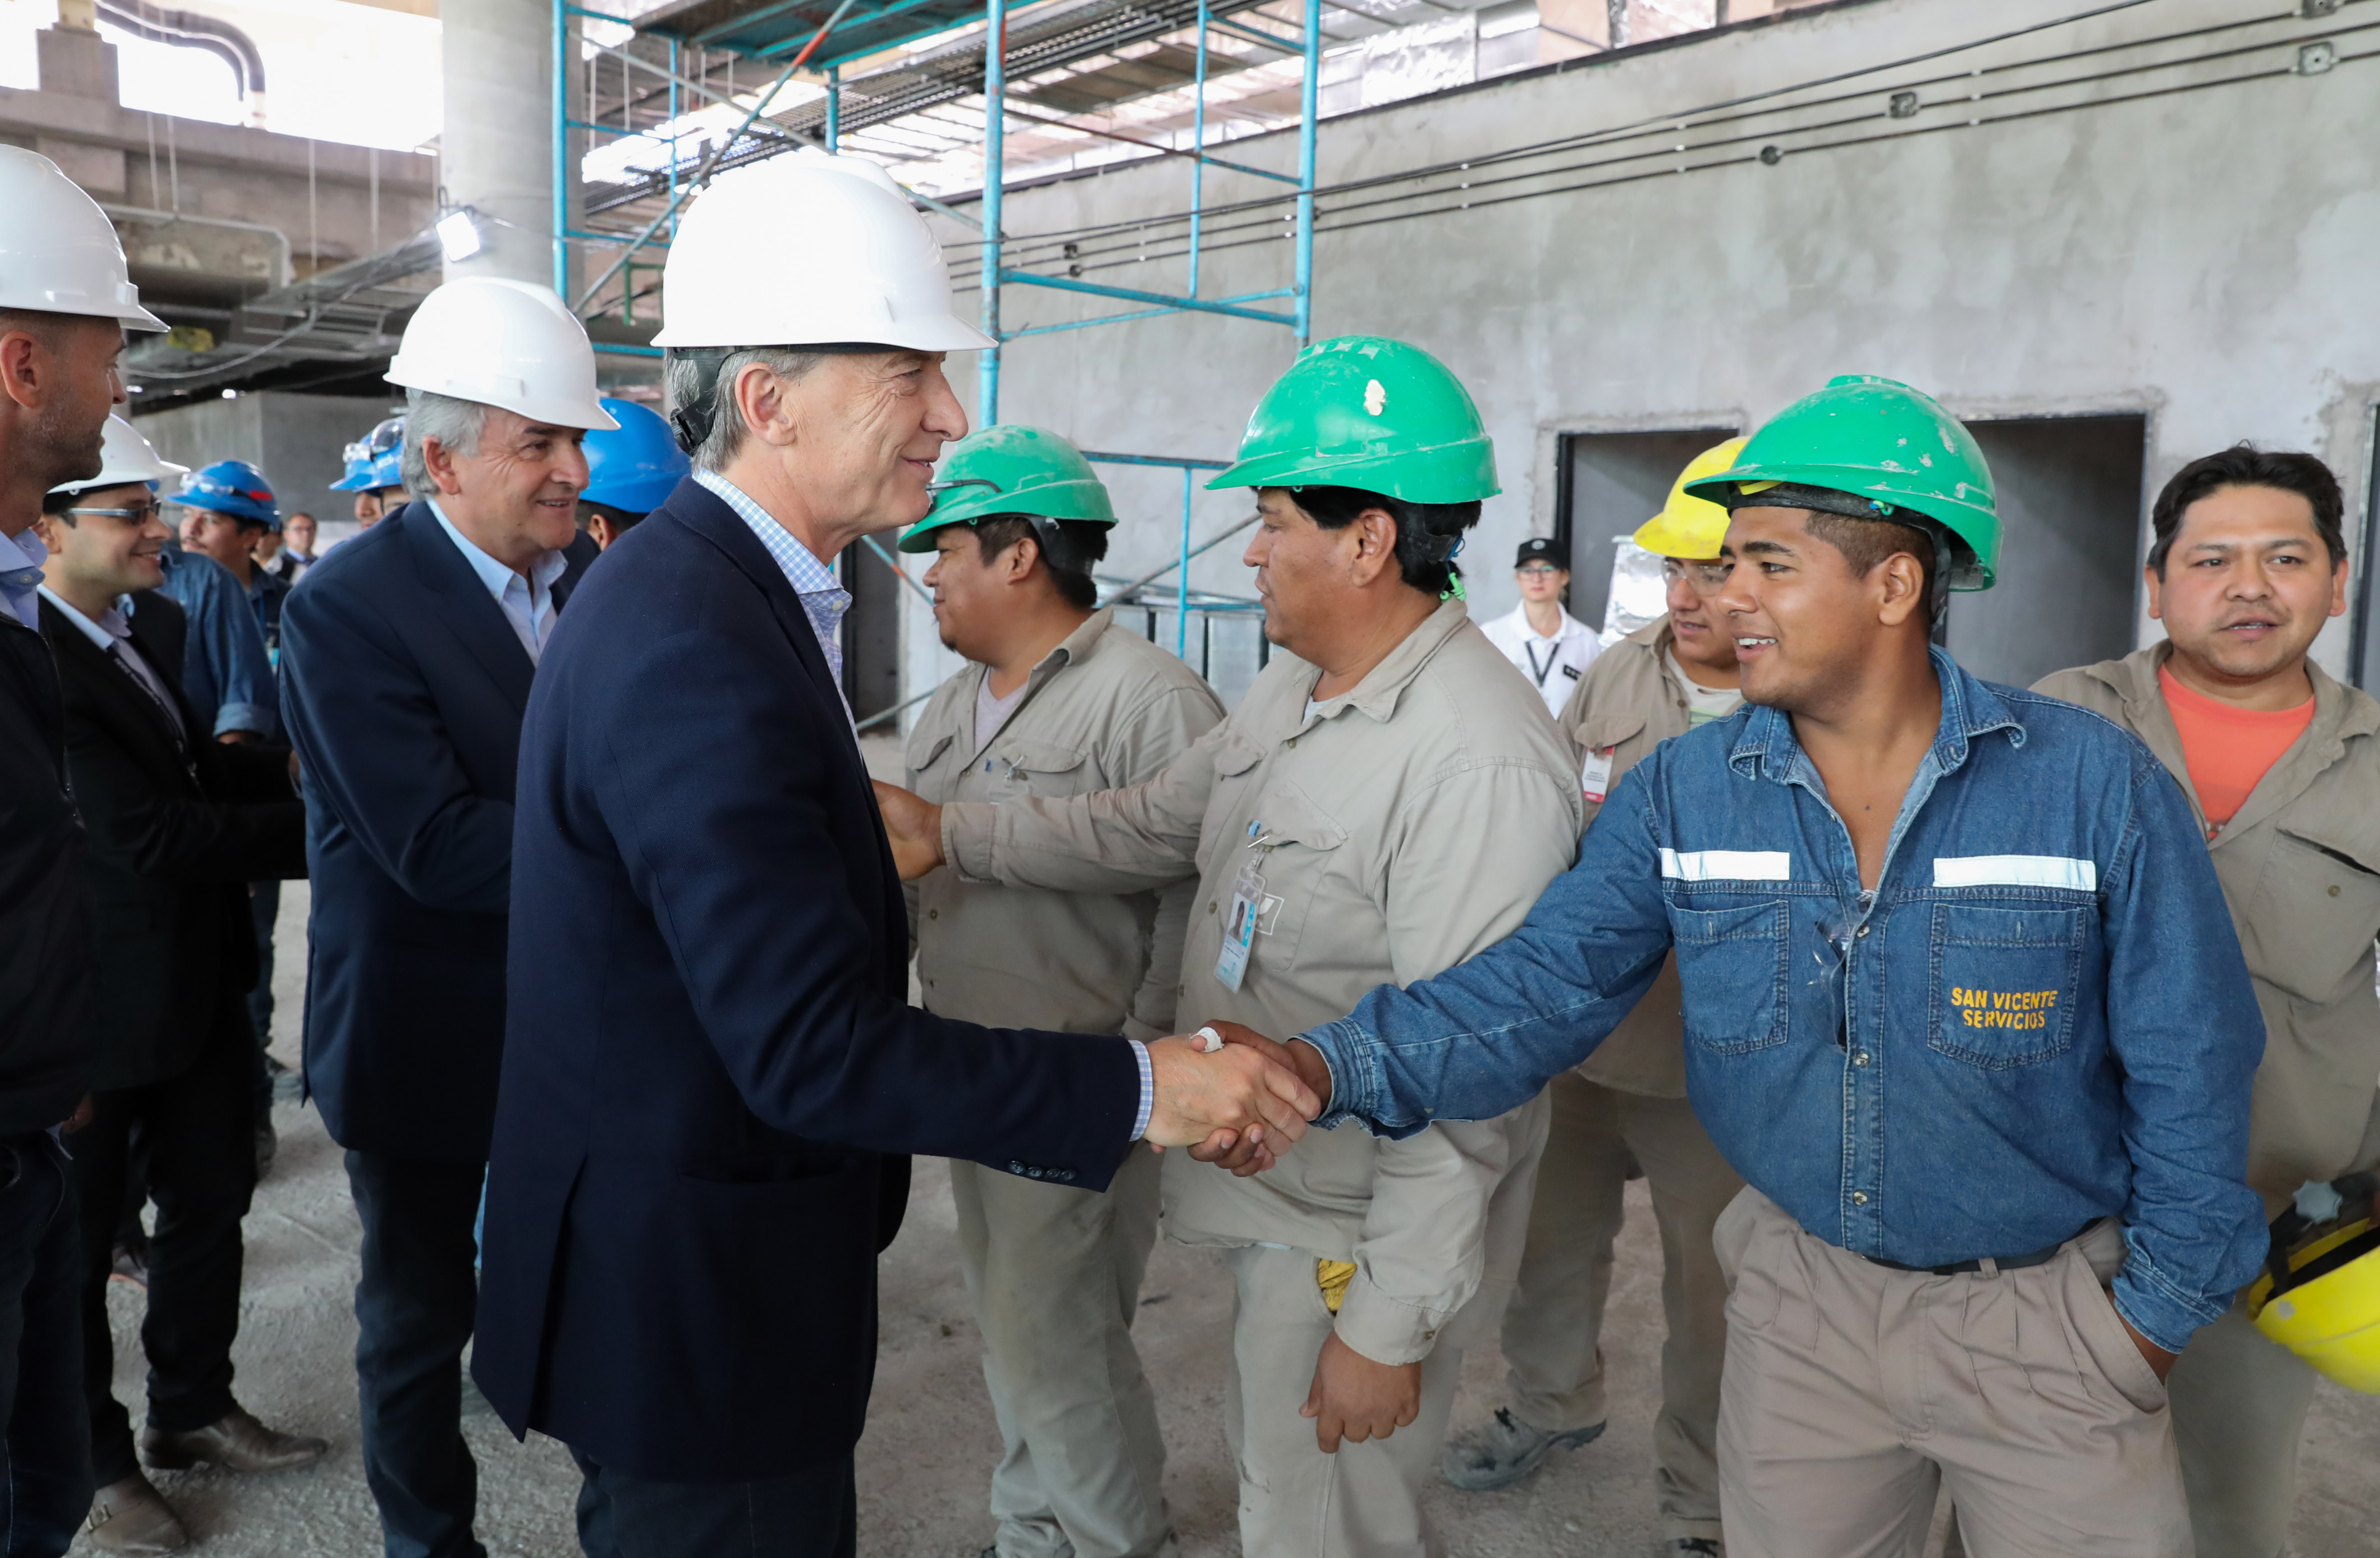 El presidente Macri recorrió las obras de ampliación y modernización del Aeropuerto de Jujuy